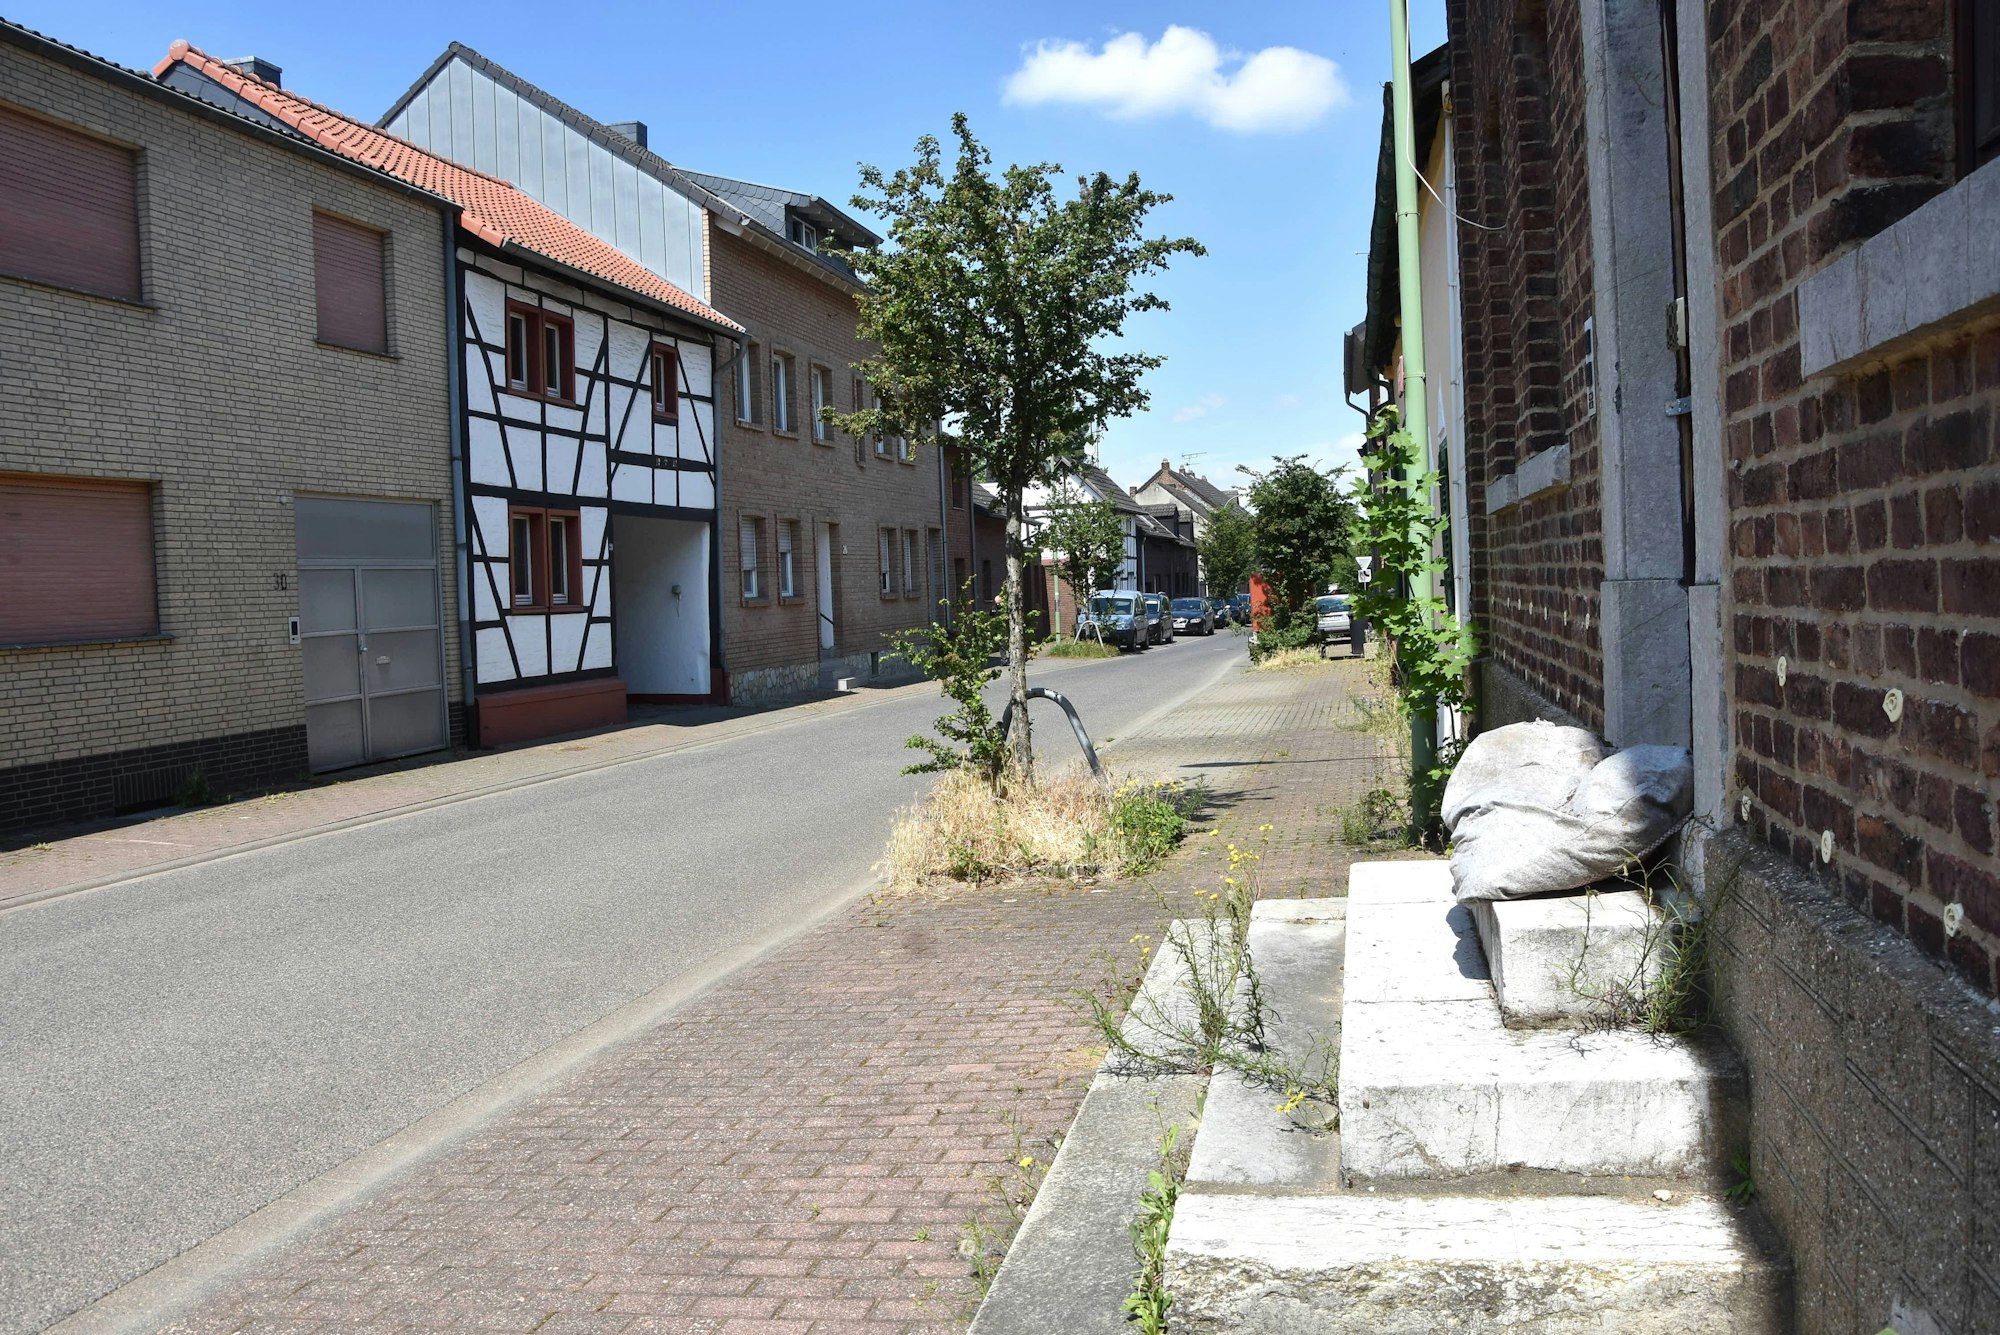 Ein klassisches rheinisches Dorf: Die bauliche Charakteristik von Morschenich ist noch weitgehend erhalten.